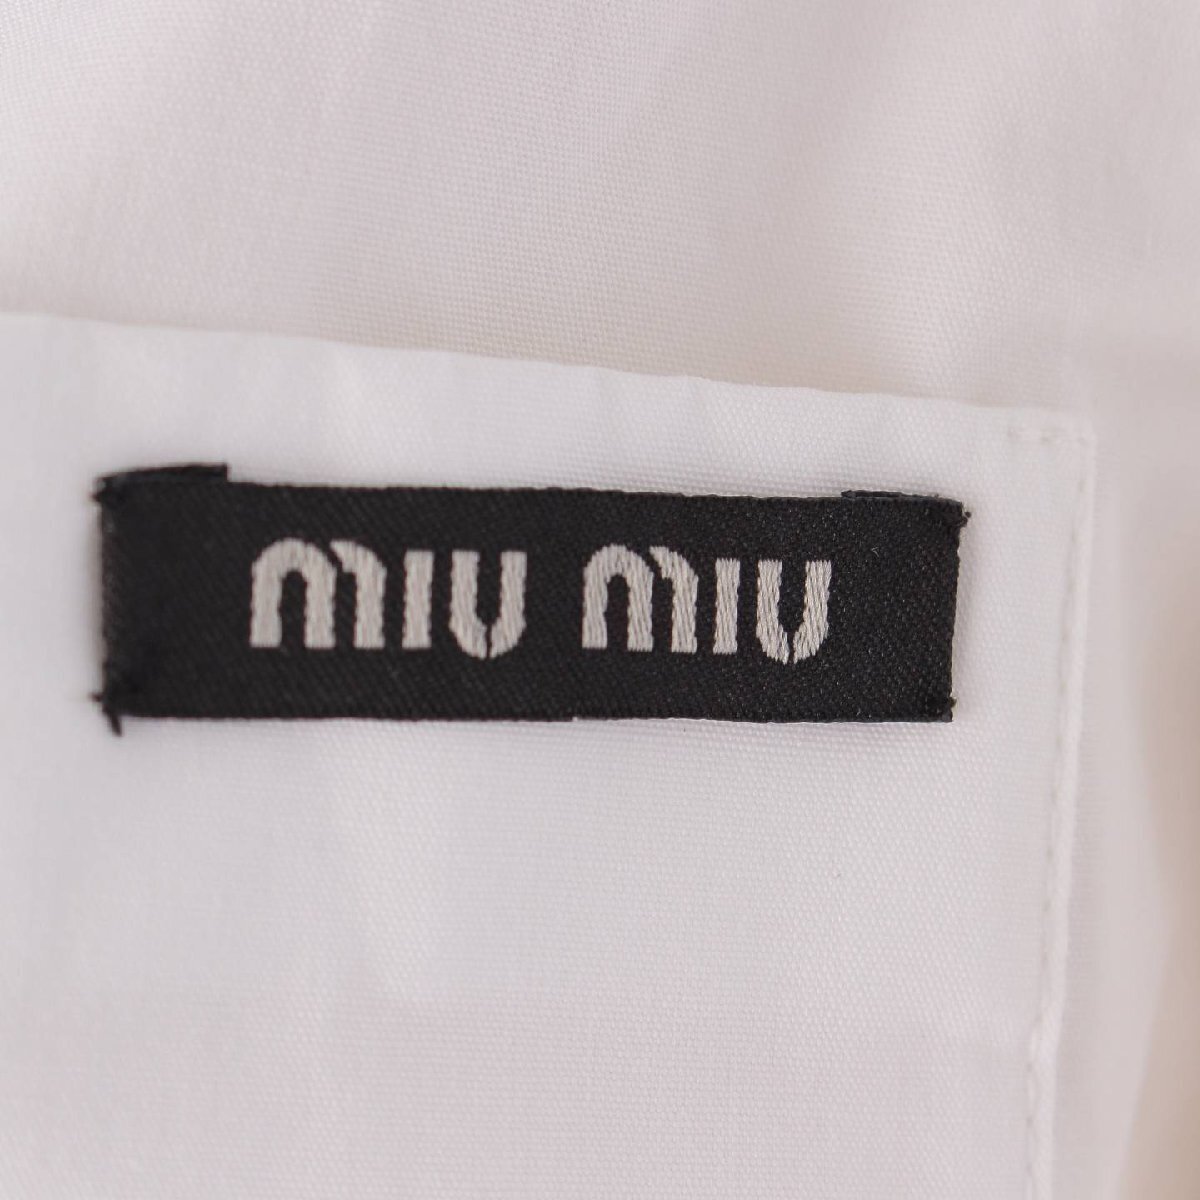 【...】Miu Miu　 2009 год   белый ...  дизайн  ворот   лента   хлопок    платье    одним лотом   белый  40 【 подержанный товар 】207635